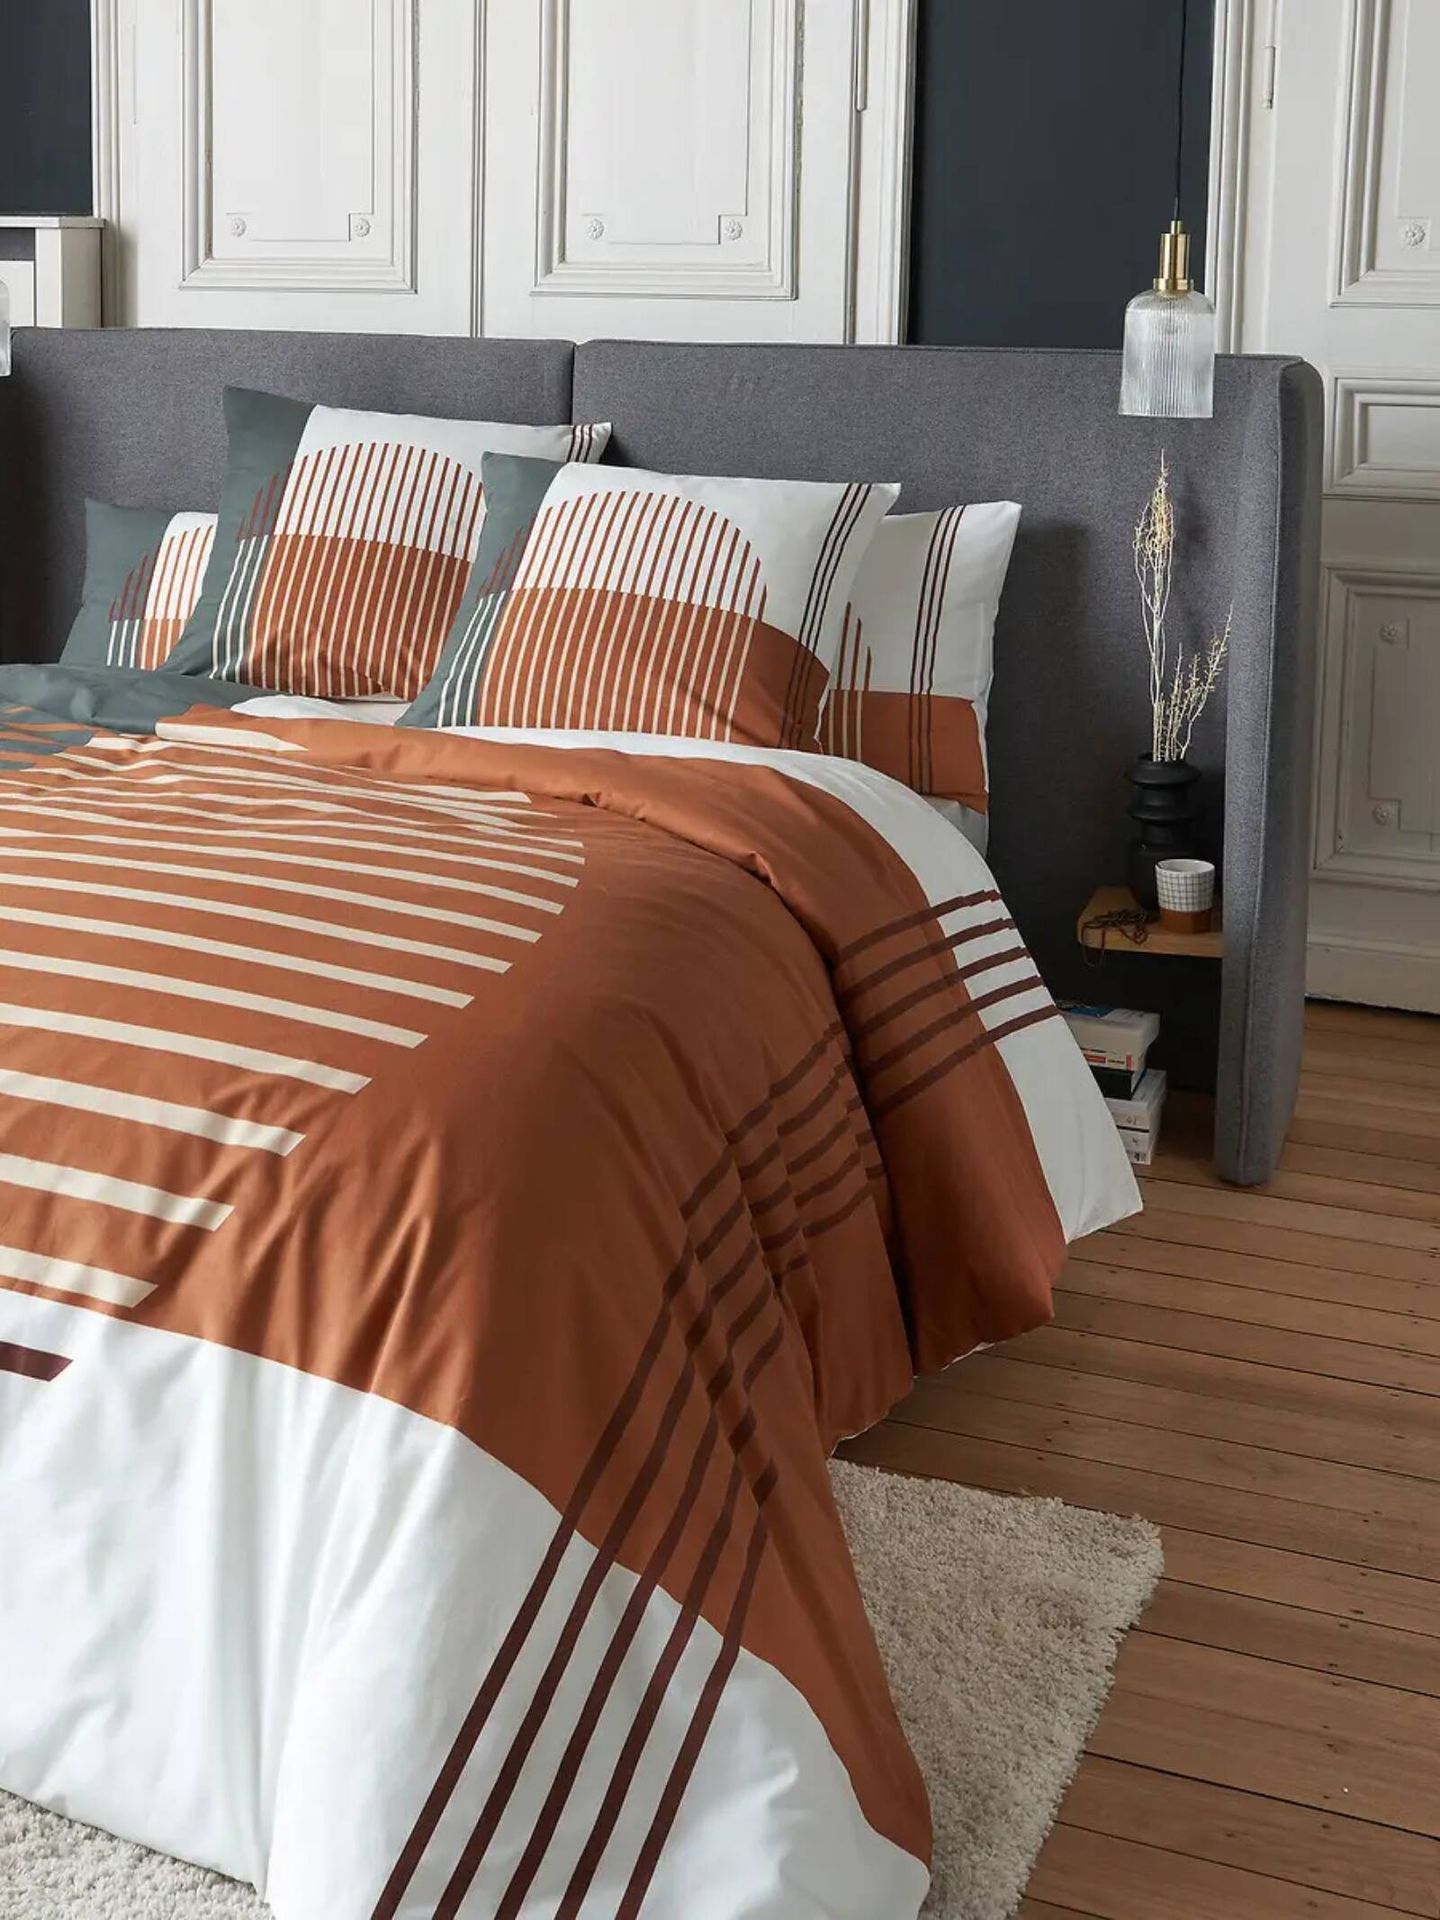 Cabeceros de cama para cambiar el aspecto de tu dormitorio. (Cortesía/La Redoute)